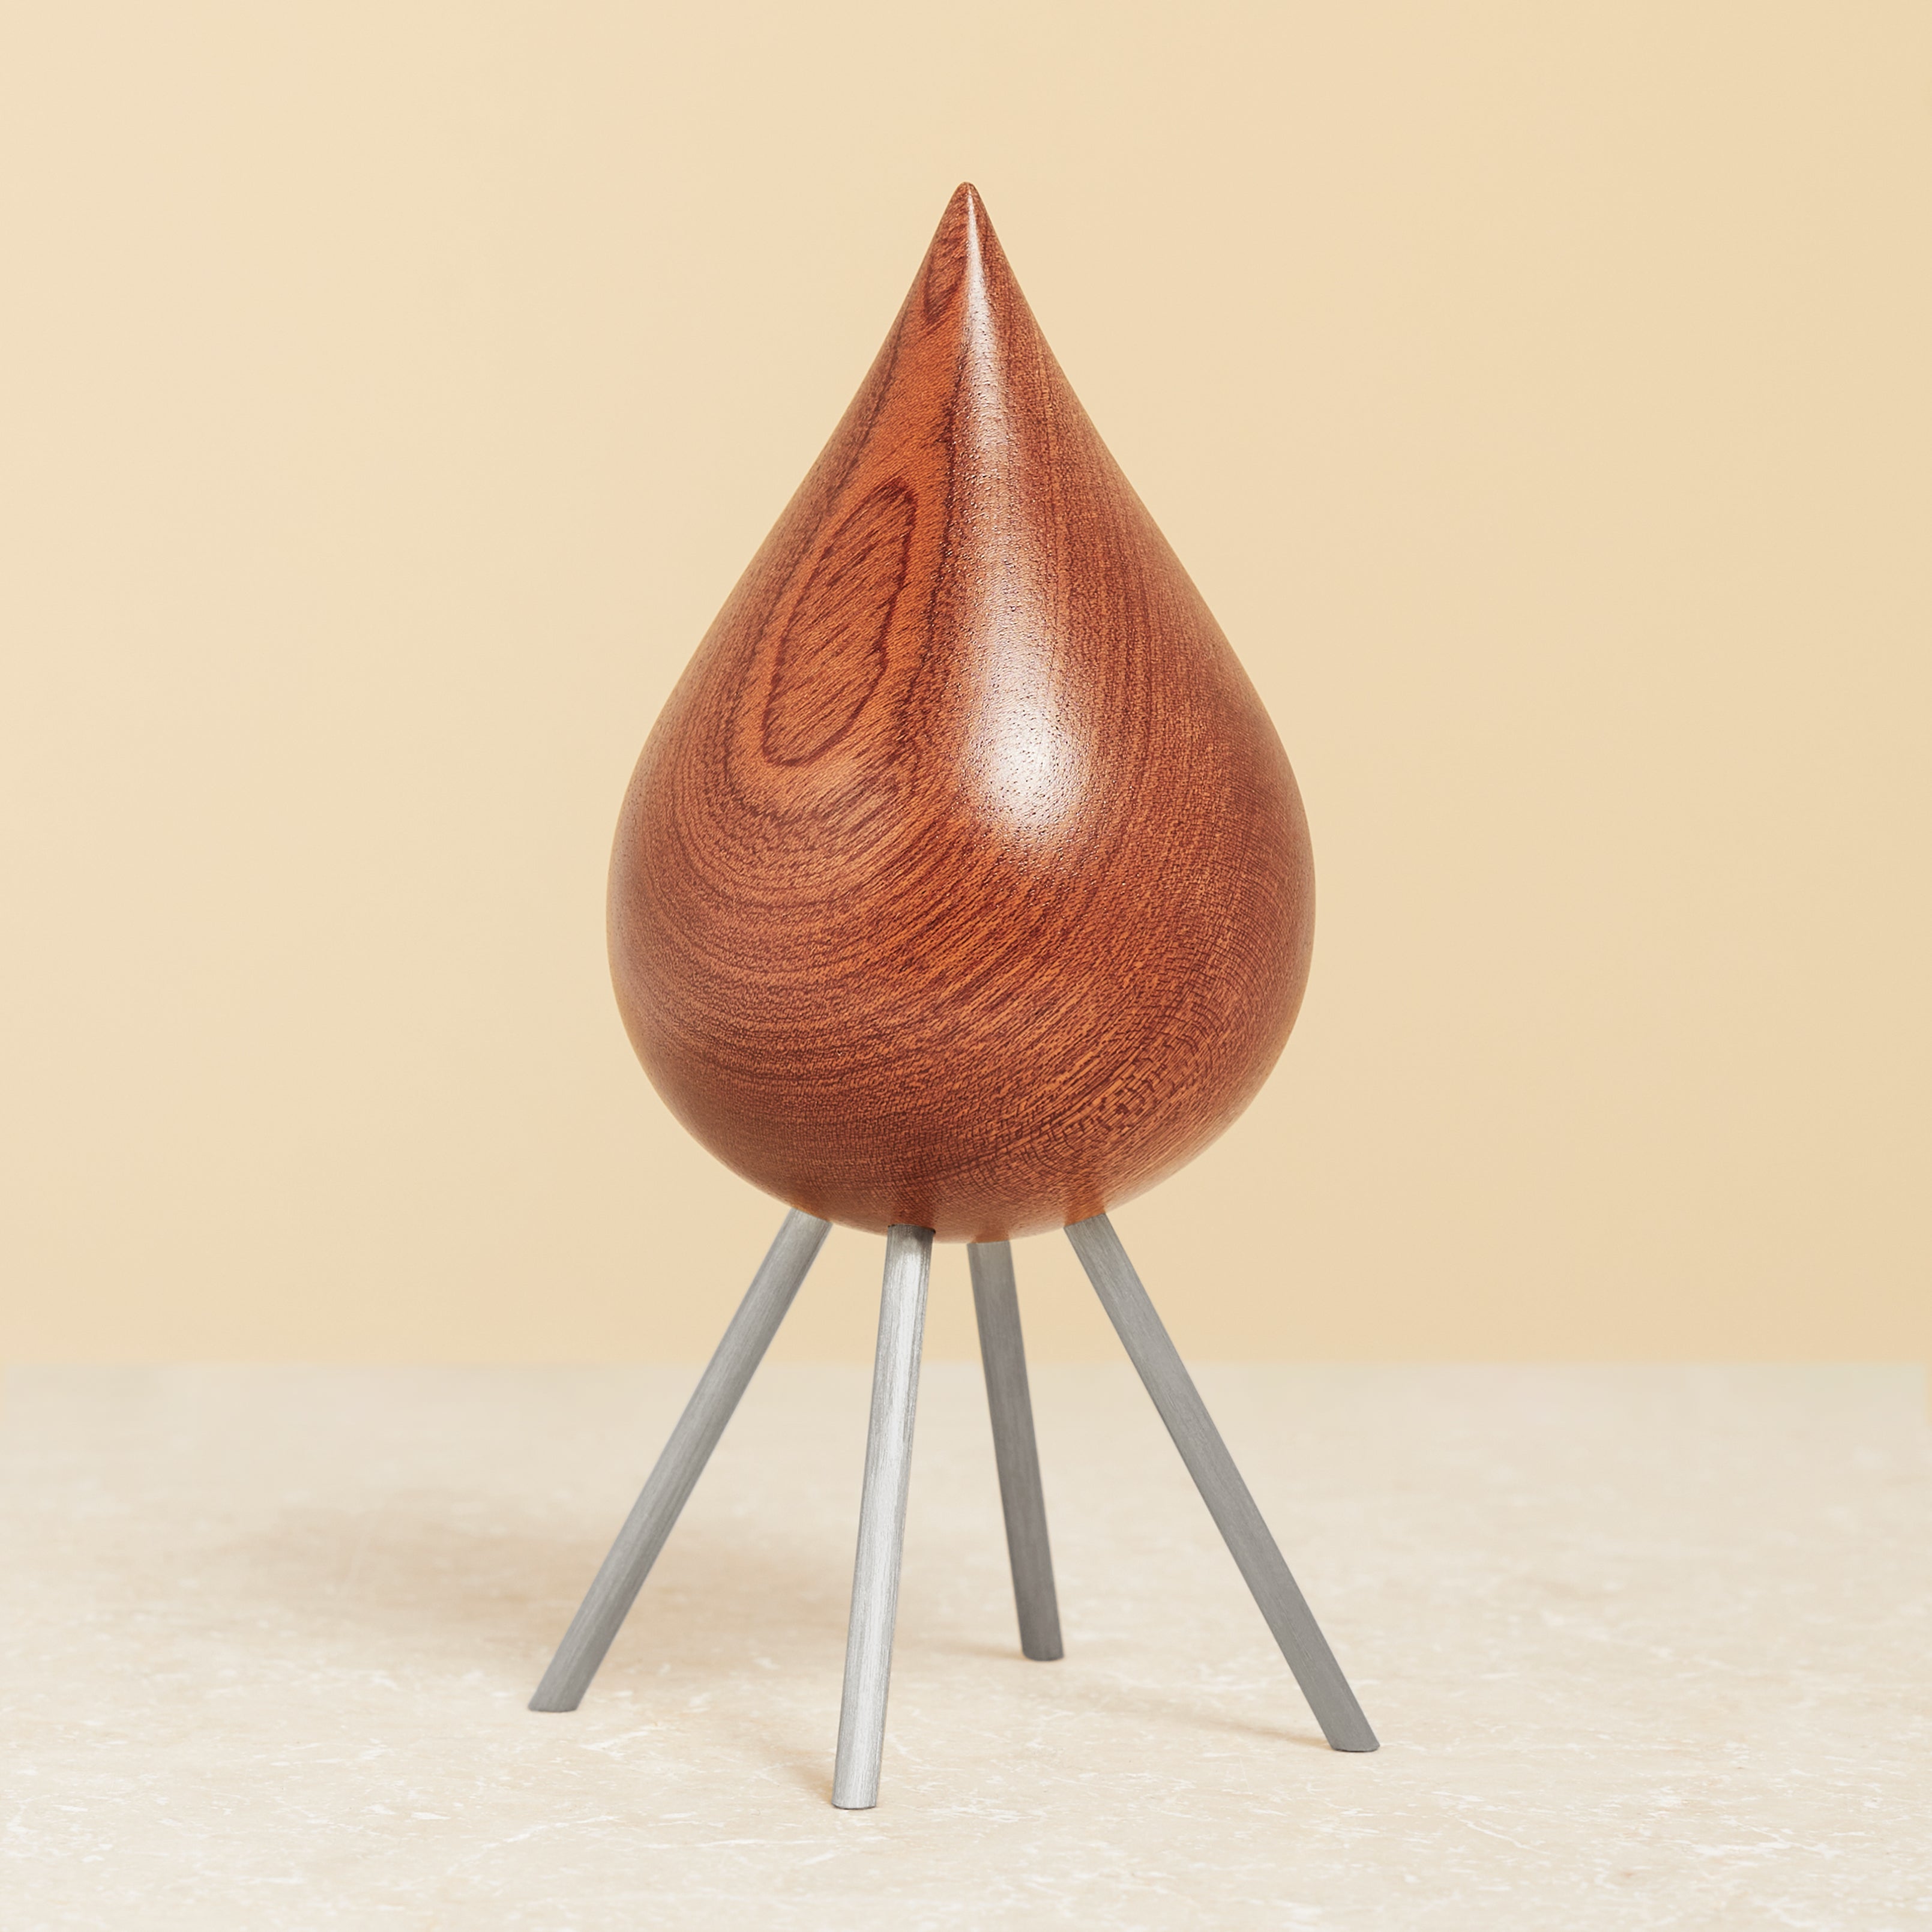 Pomysła Drewniana drewniana figura mahoniowa, stalowa podstawa